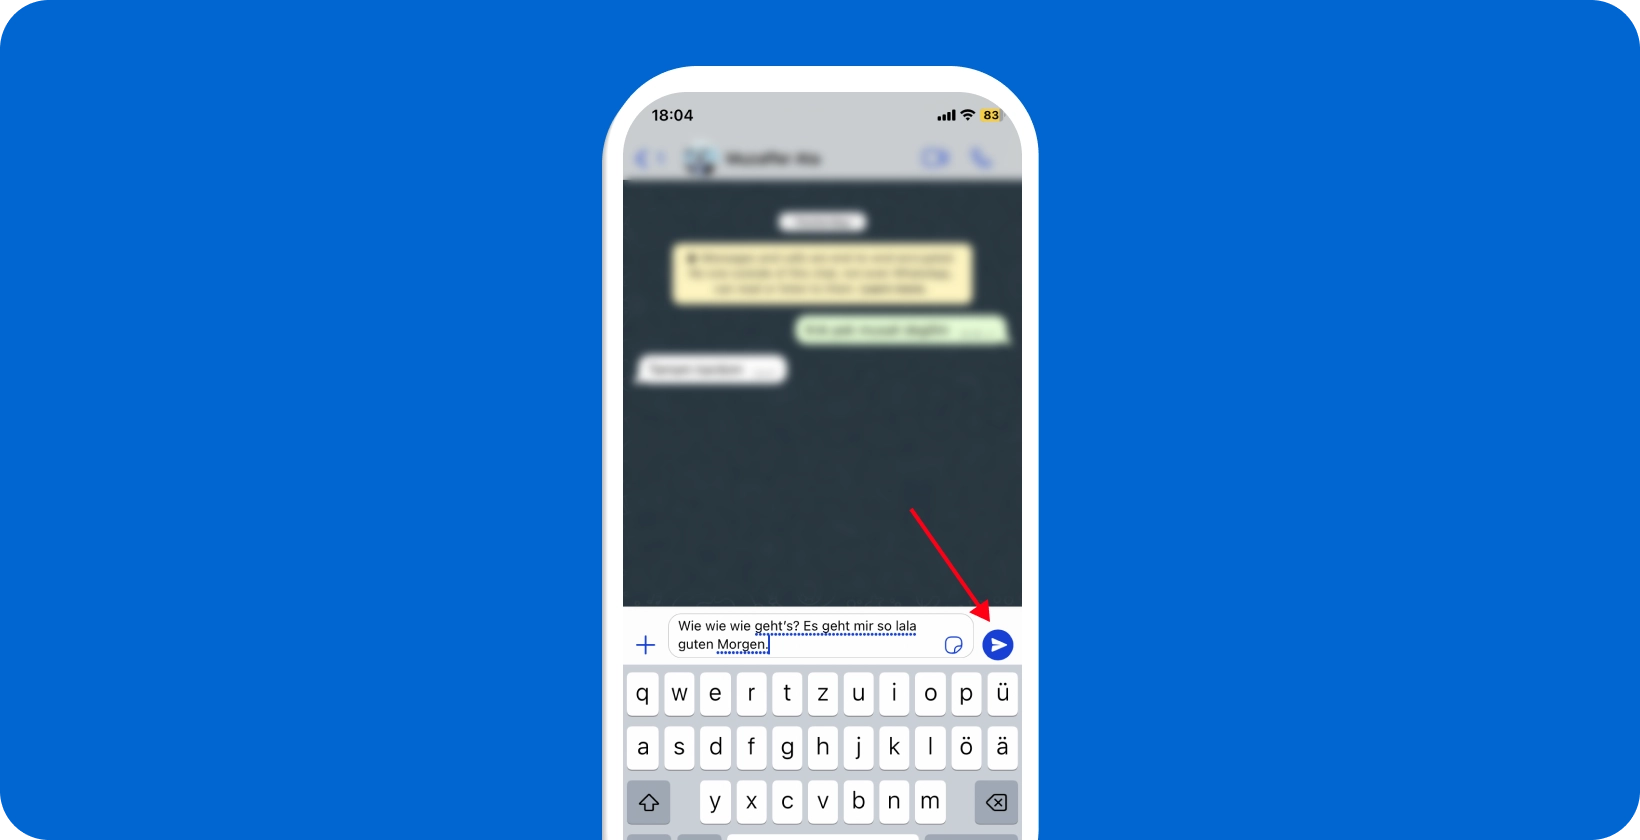 Pantalla del teléfono inteligente que muestra la función de dictado de voz de WhatsApp que se está utilizando, con un icono de micrófono resaltado.